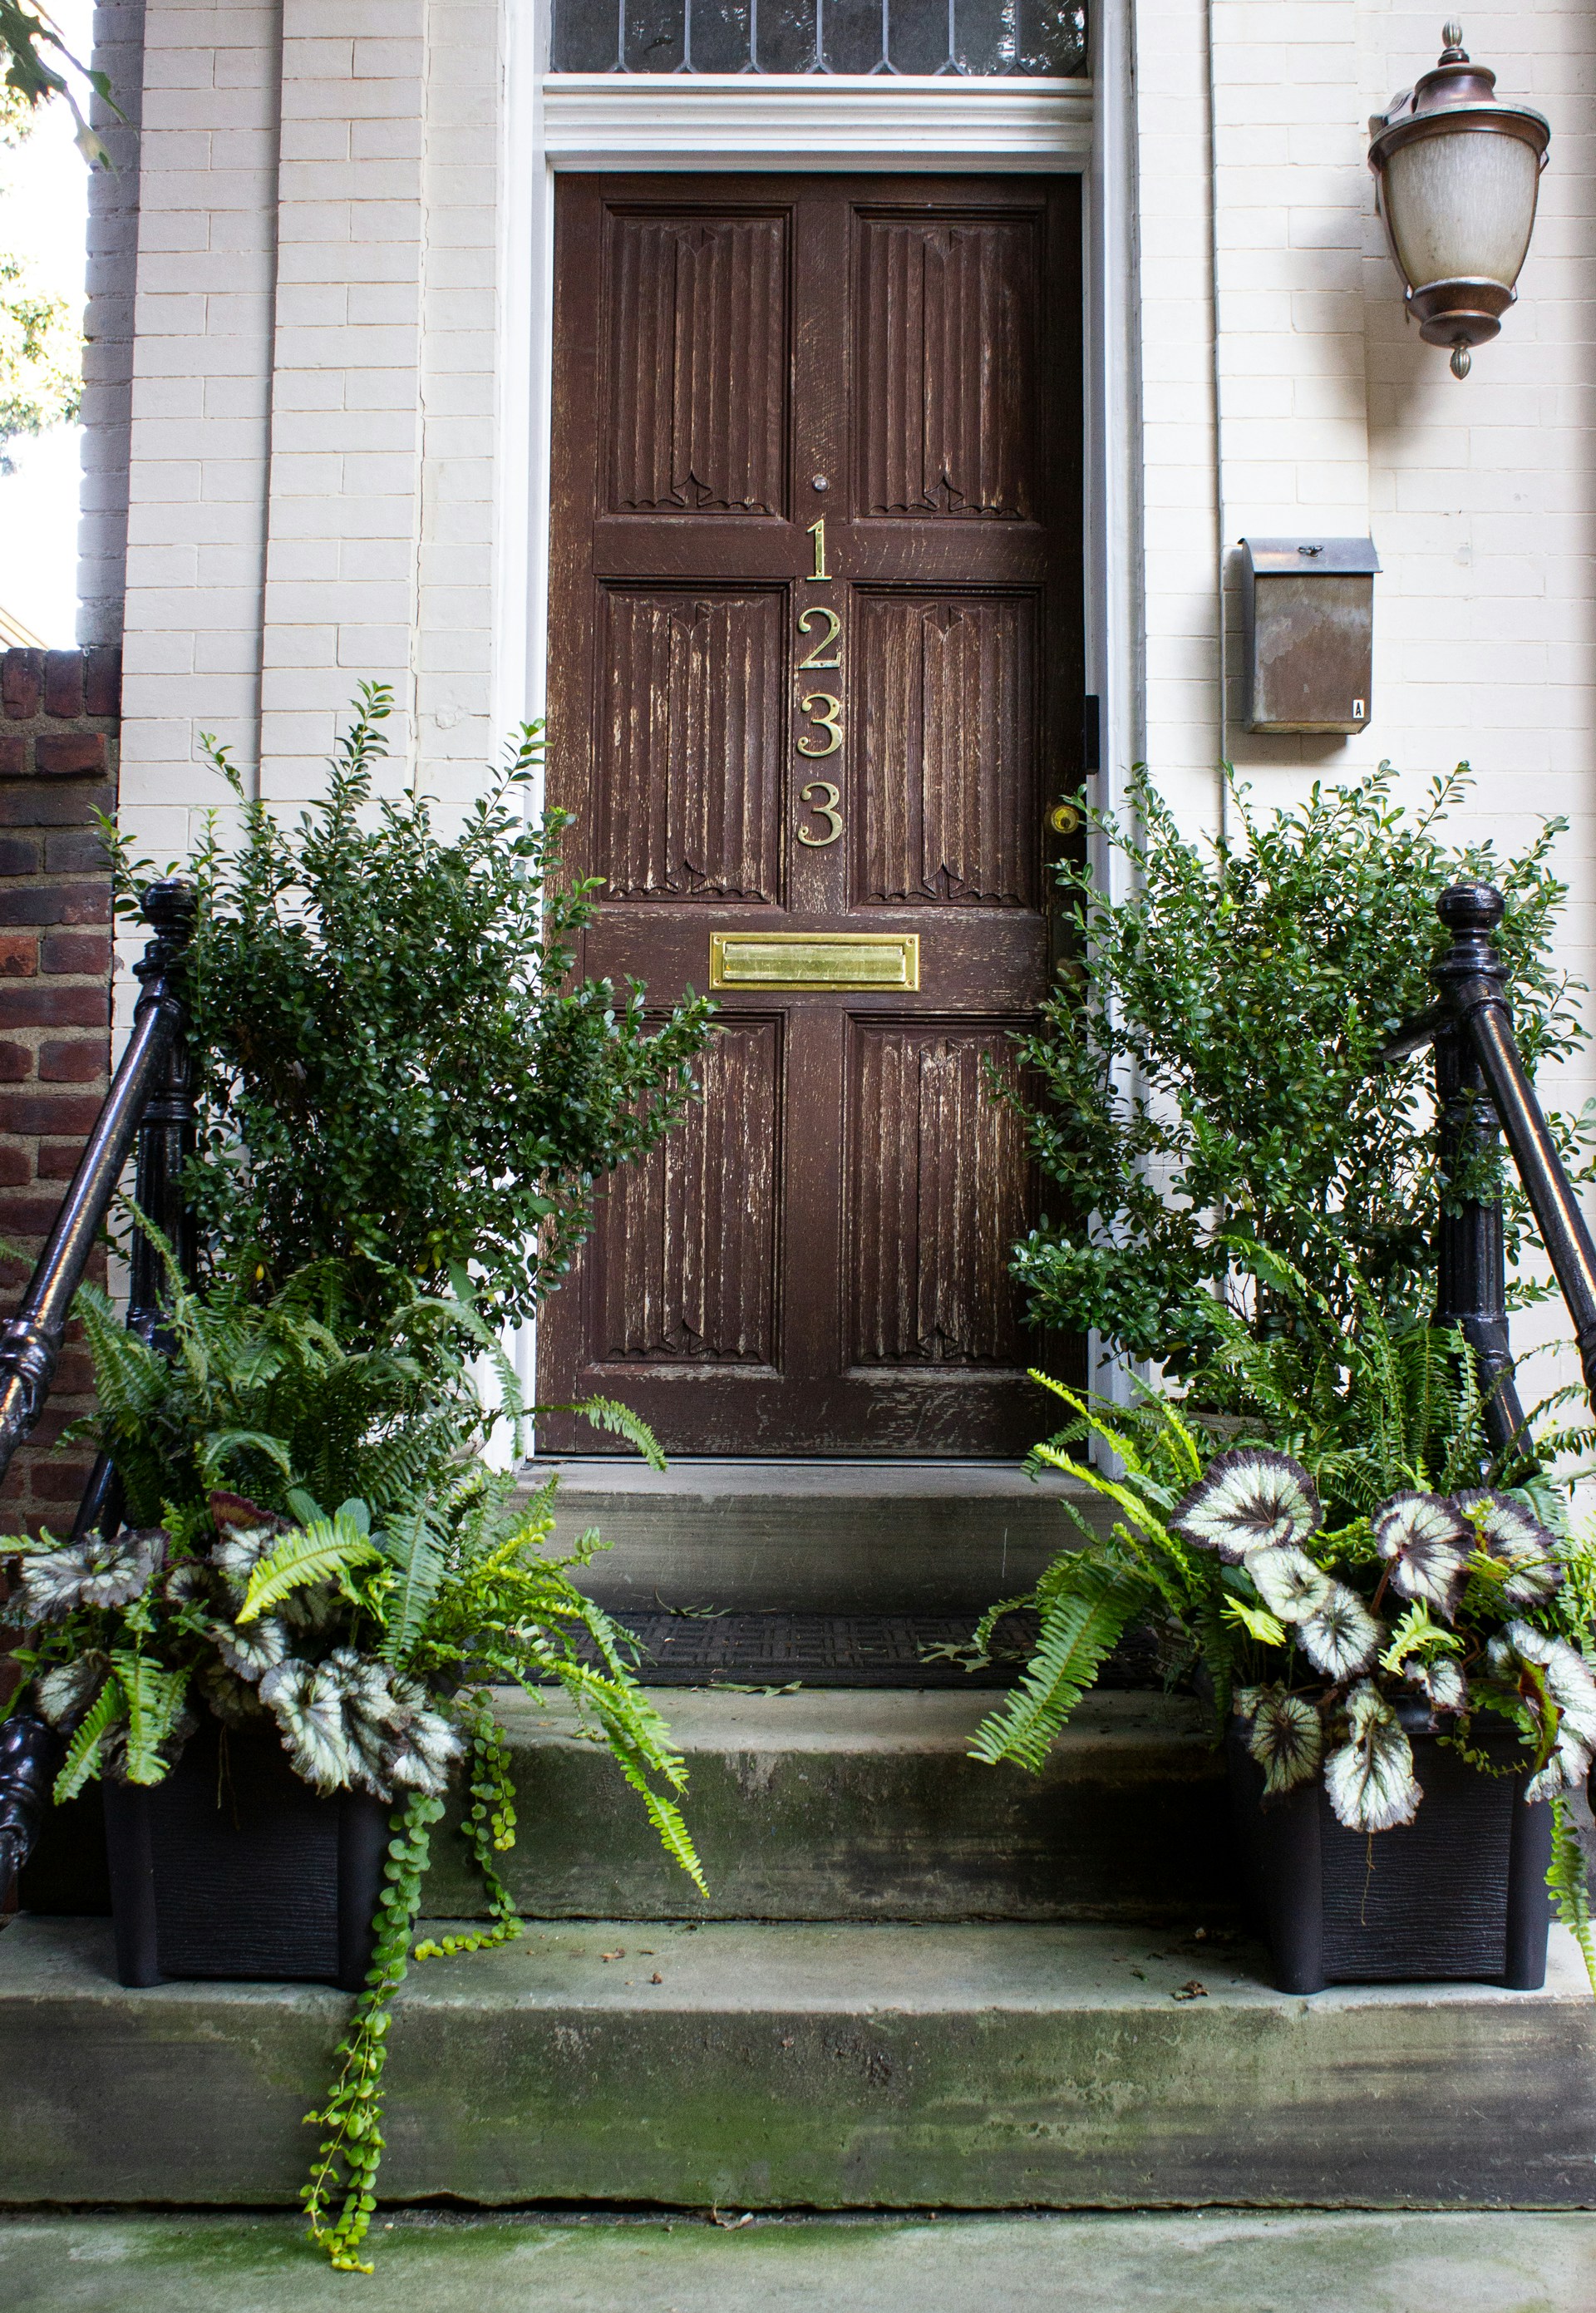 Une porte en bois marron avec des plantes vertes | Source : Unsplash